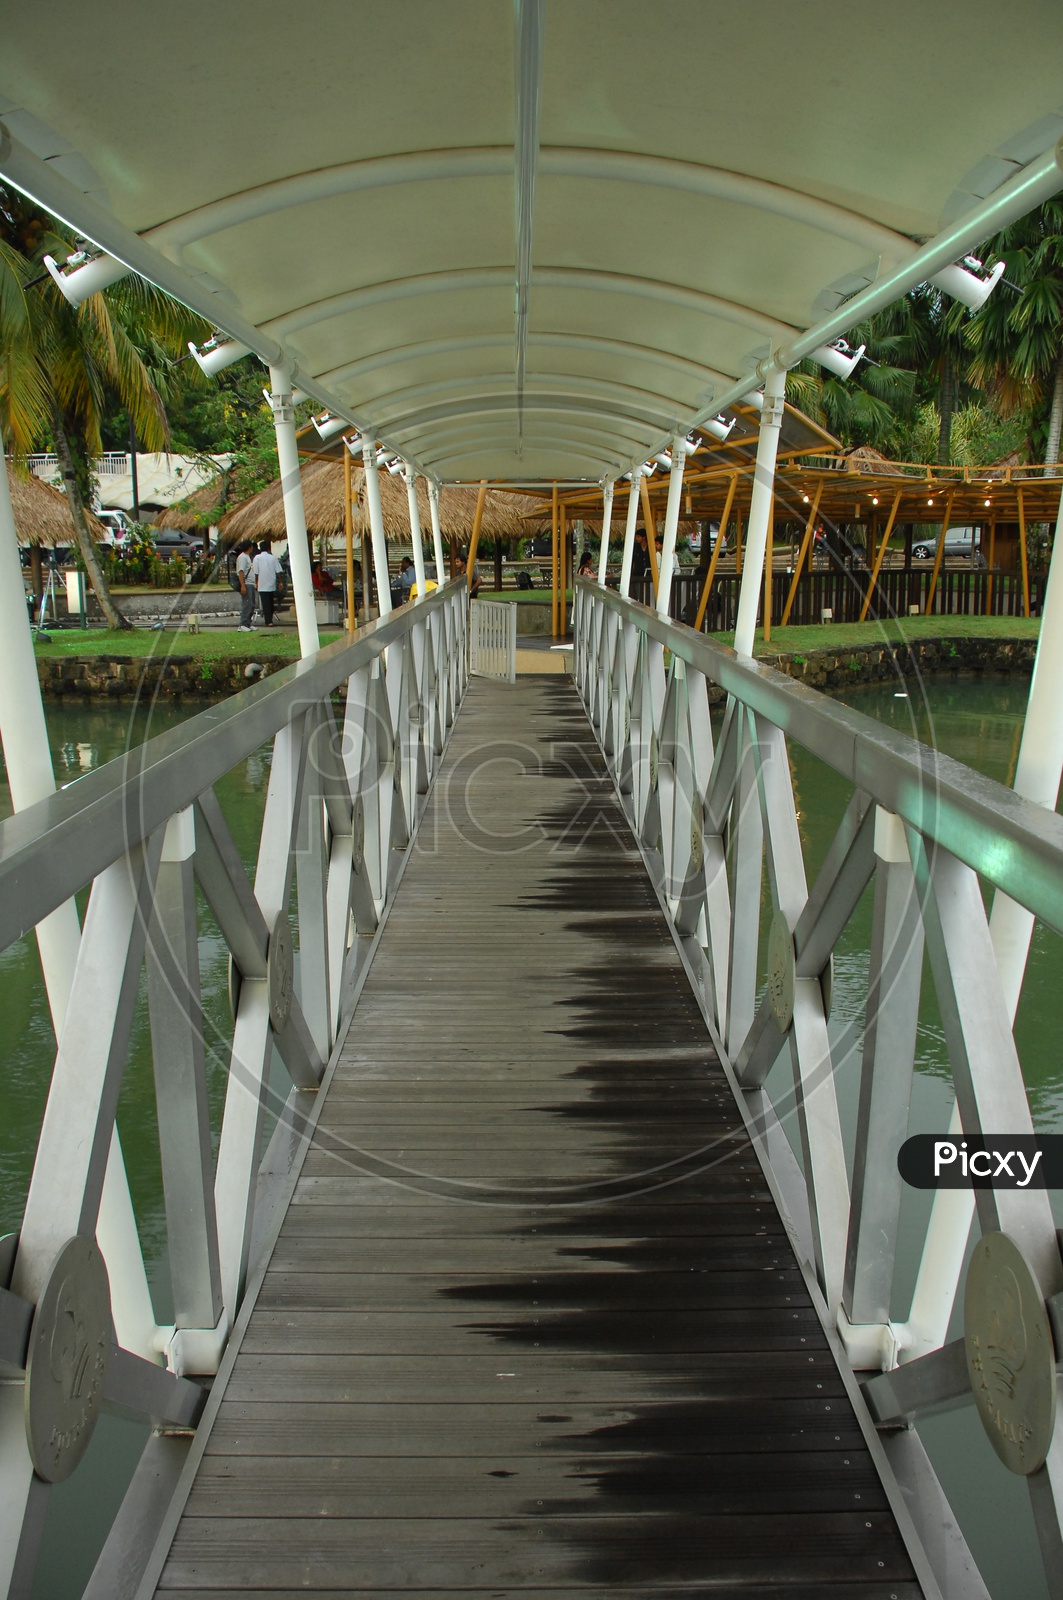 Boardwalk of the bridge alongside a resort